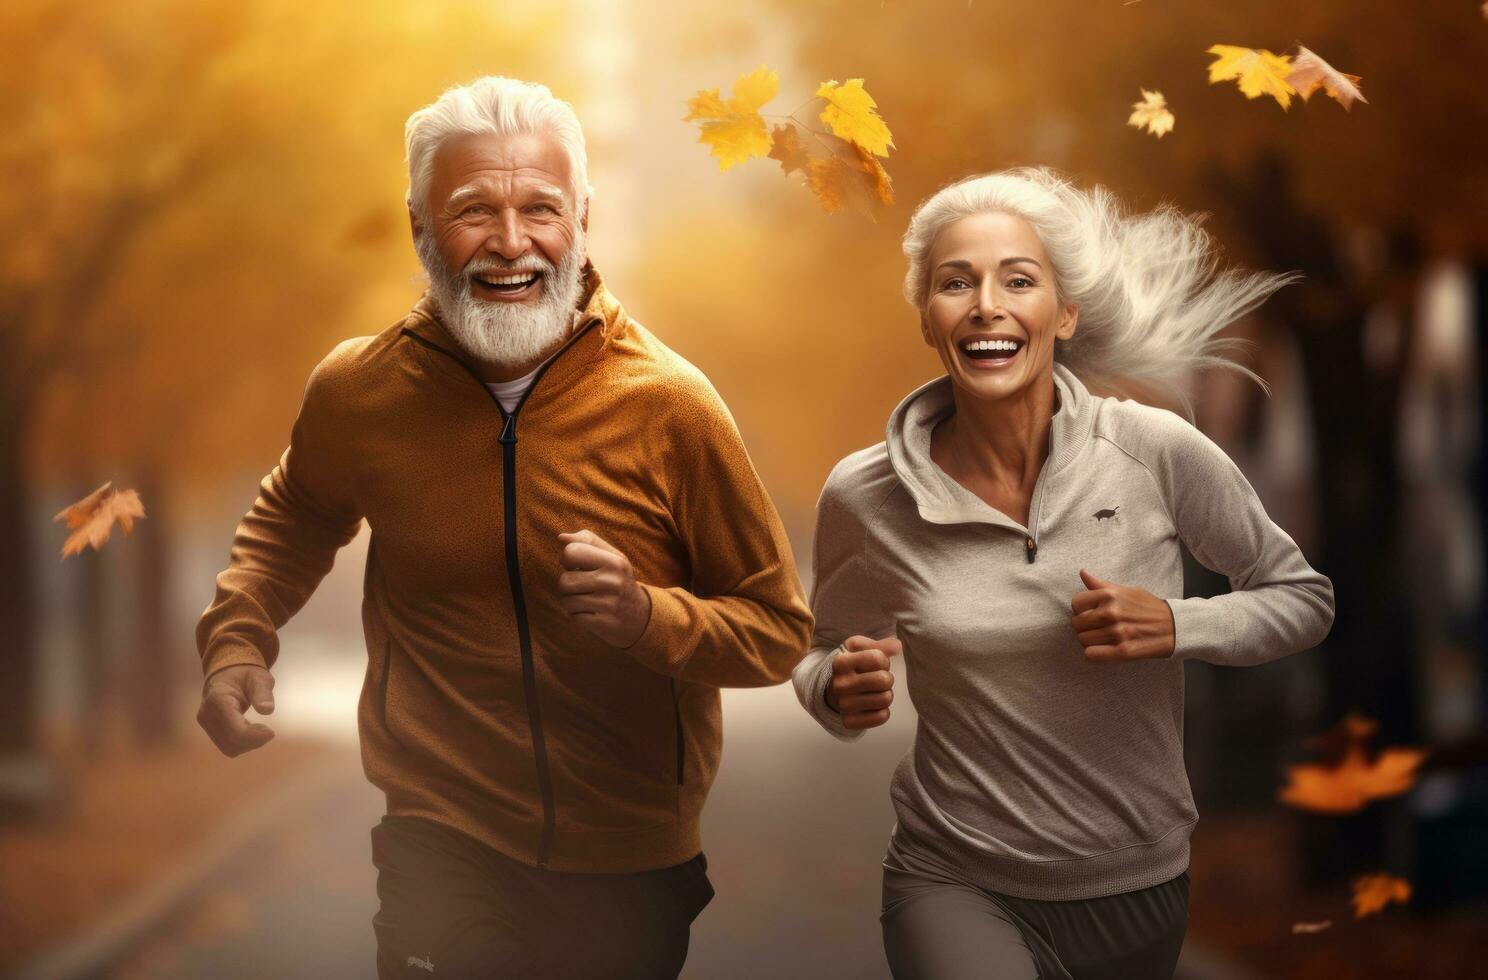 un più vecchio coppia è jogging nel un Aperto campo foto